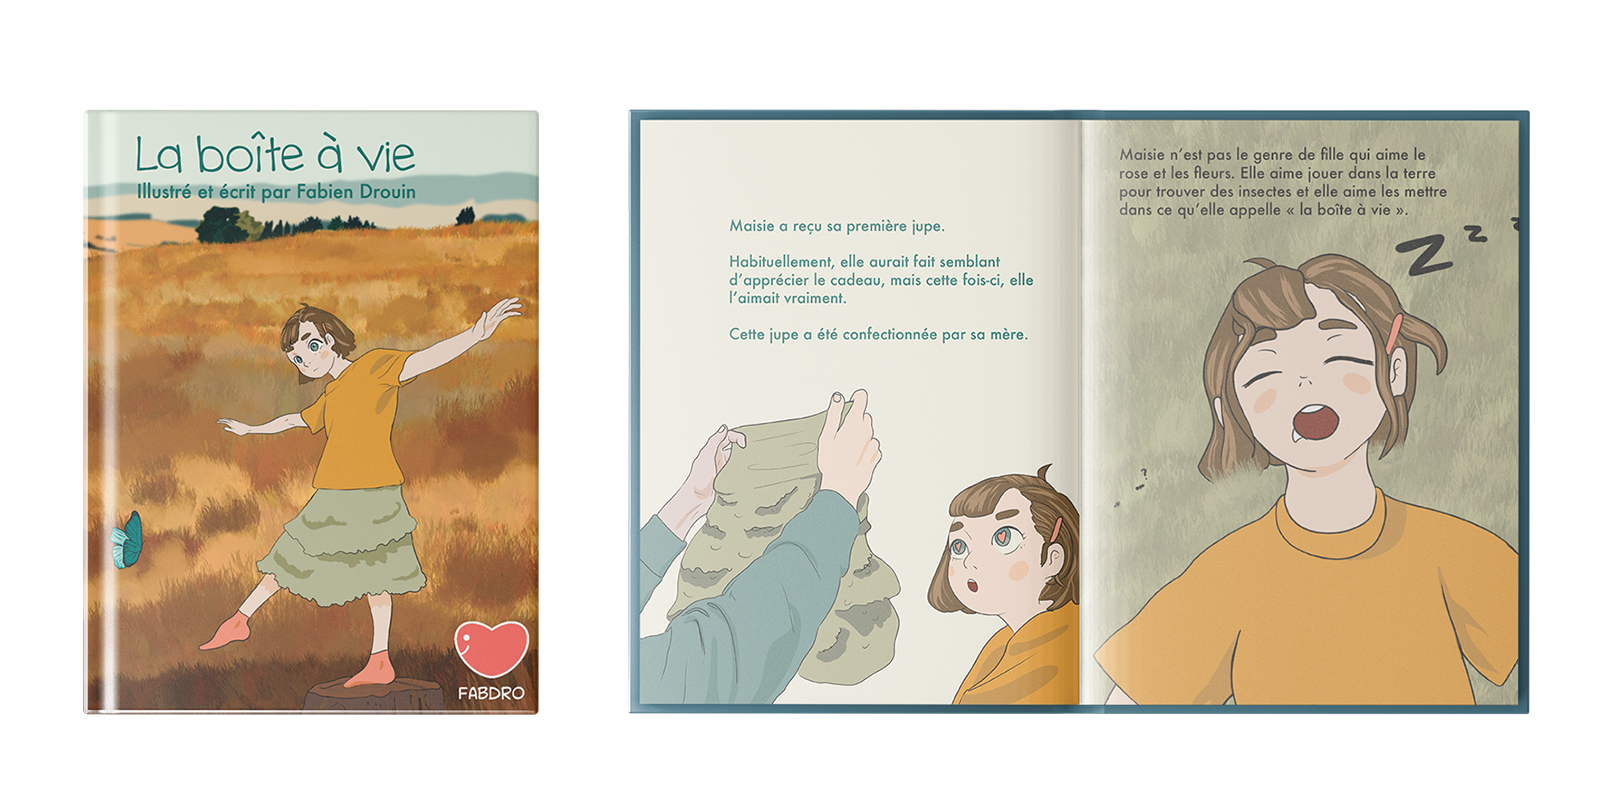 Mise en page et illustration d'un livre pour enfant La boîte à vie par Fabien Drouin